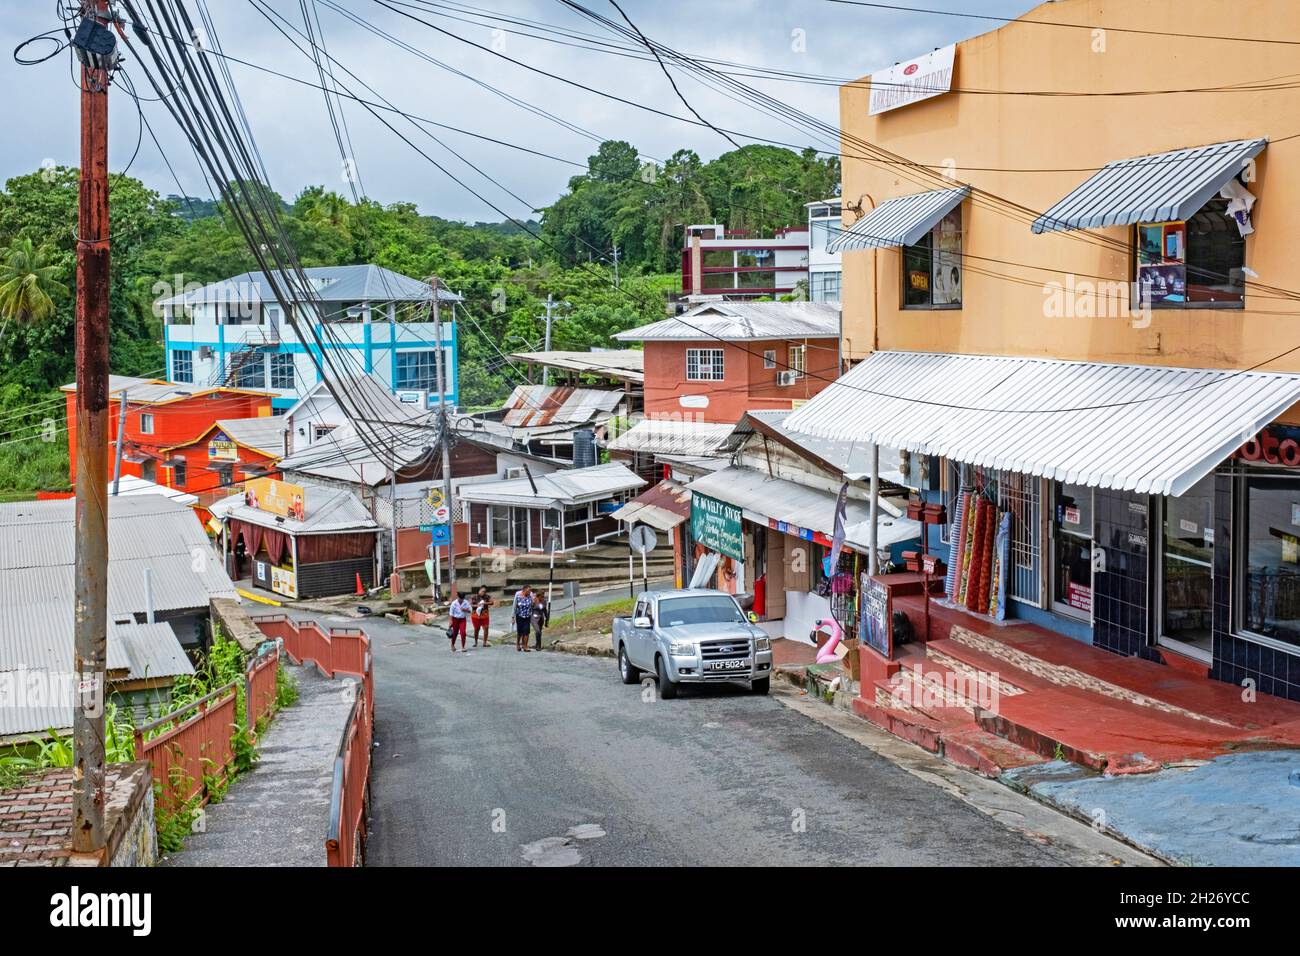 Escena de calle que muestra tiendas en Scarborough, la principal ciudad de la isla Tobago, Trinidad y Tobago en el Caribe Foto de stock